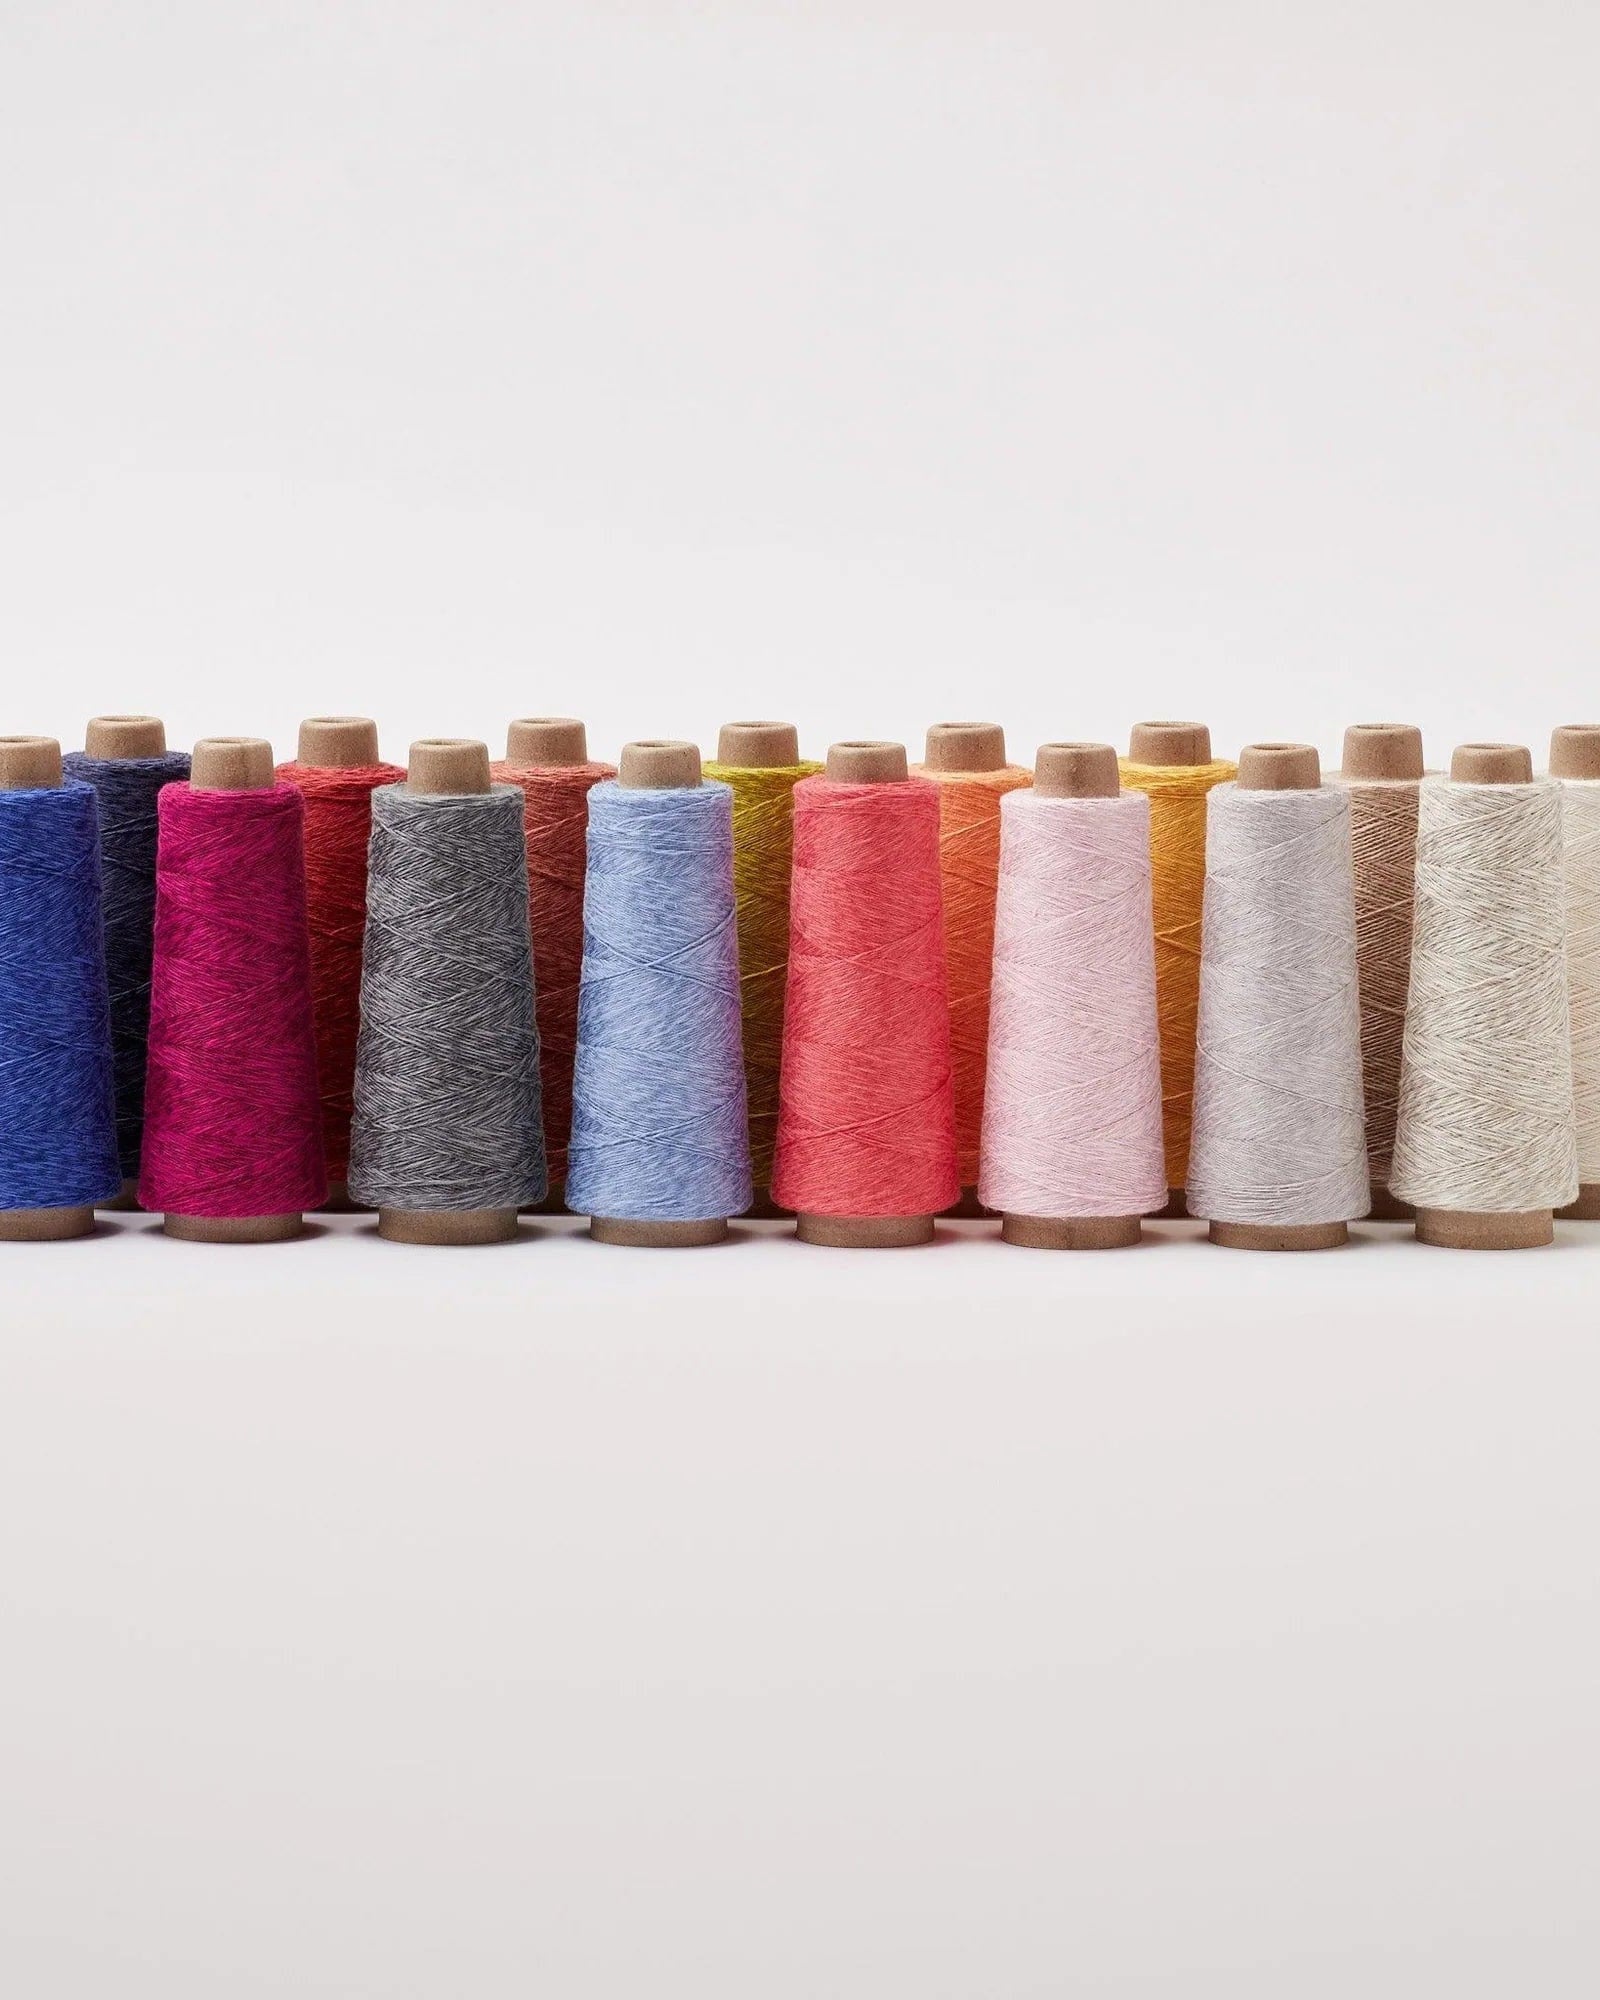 GIST Weaving Yarn Duet Cotton/Linen Weaving Yarn